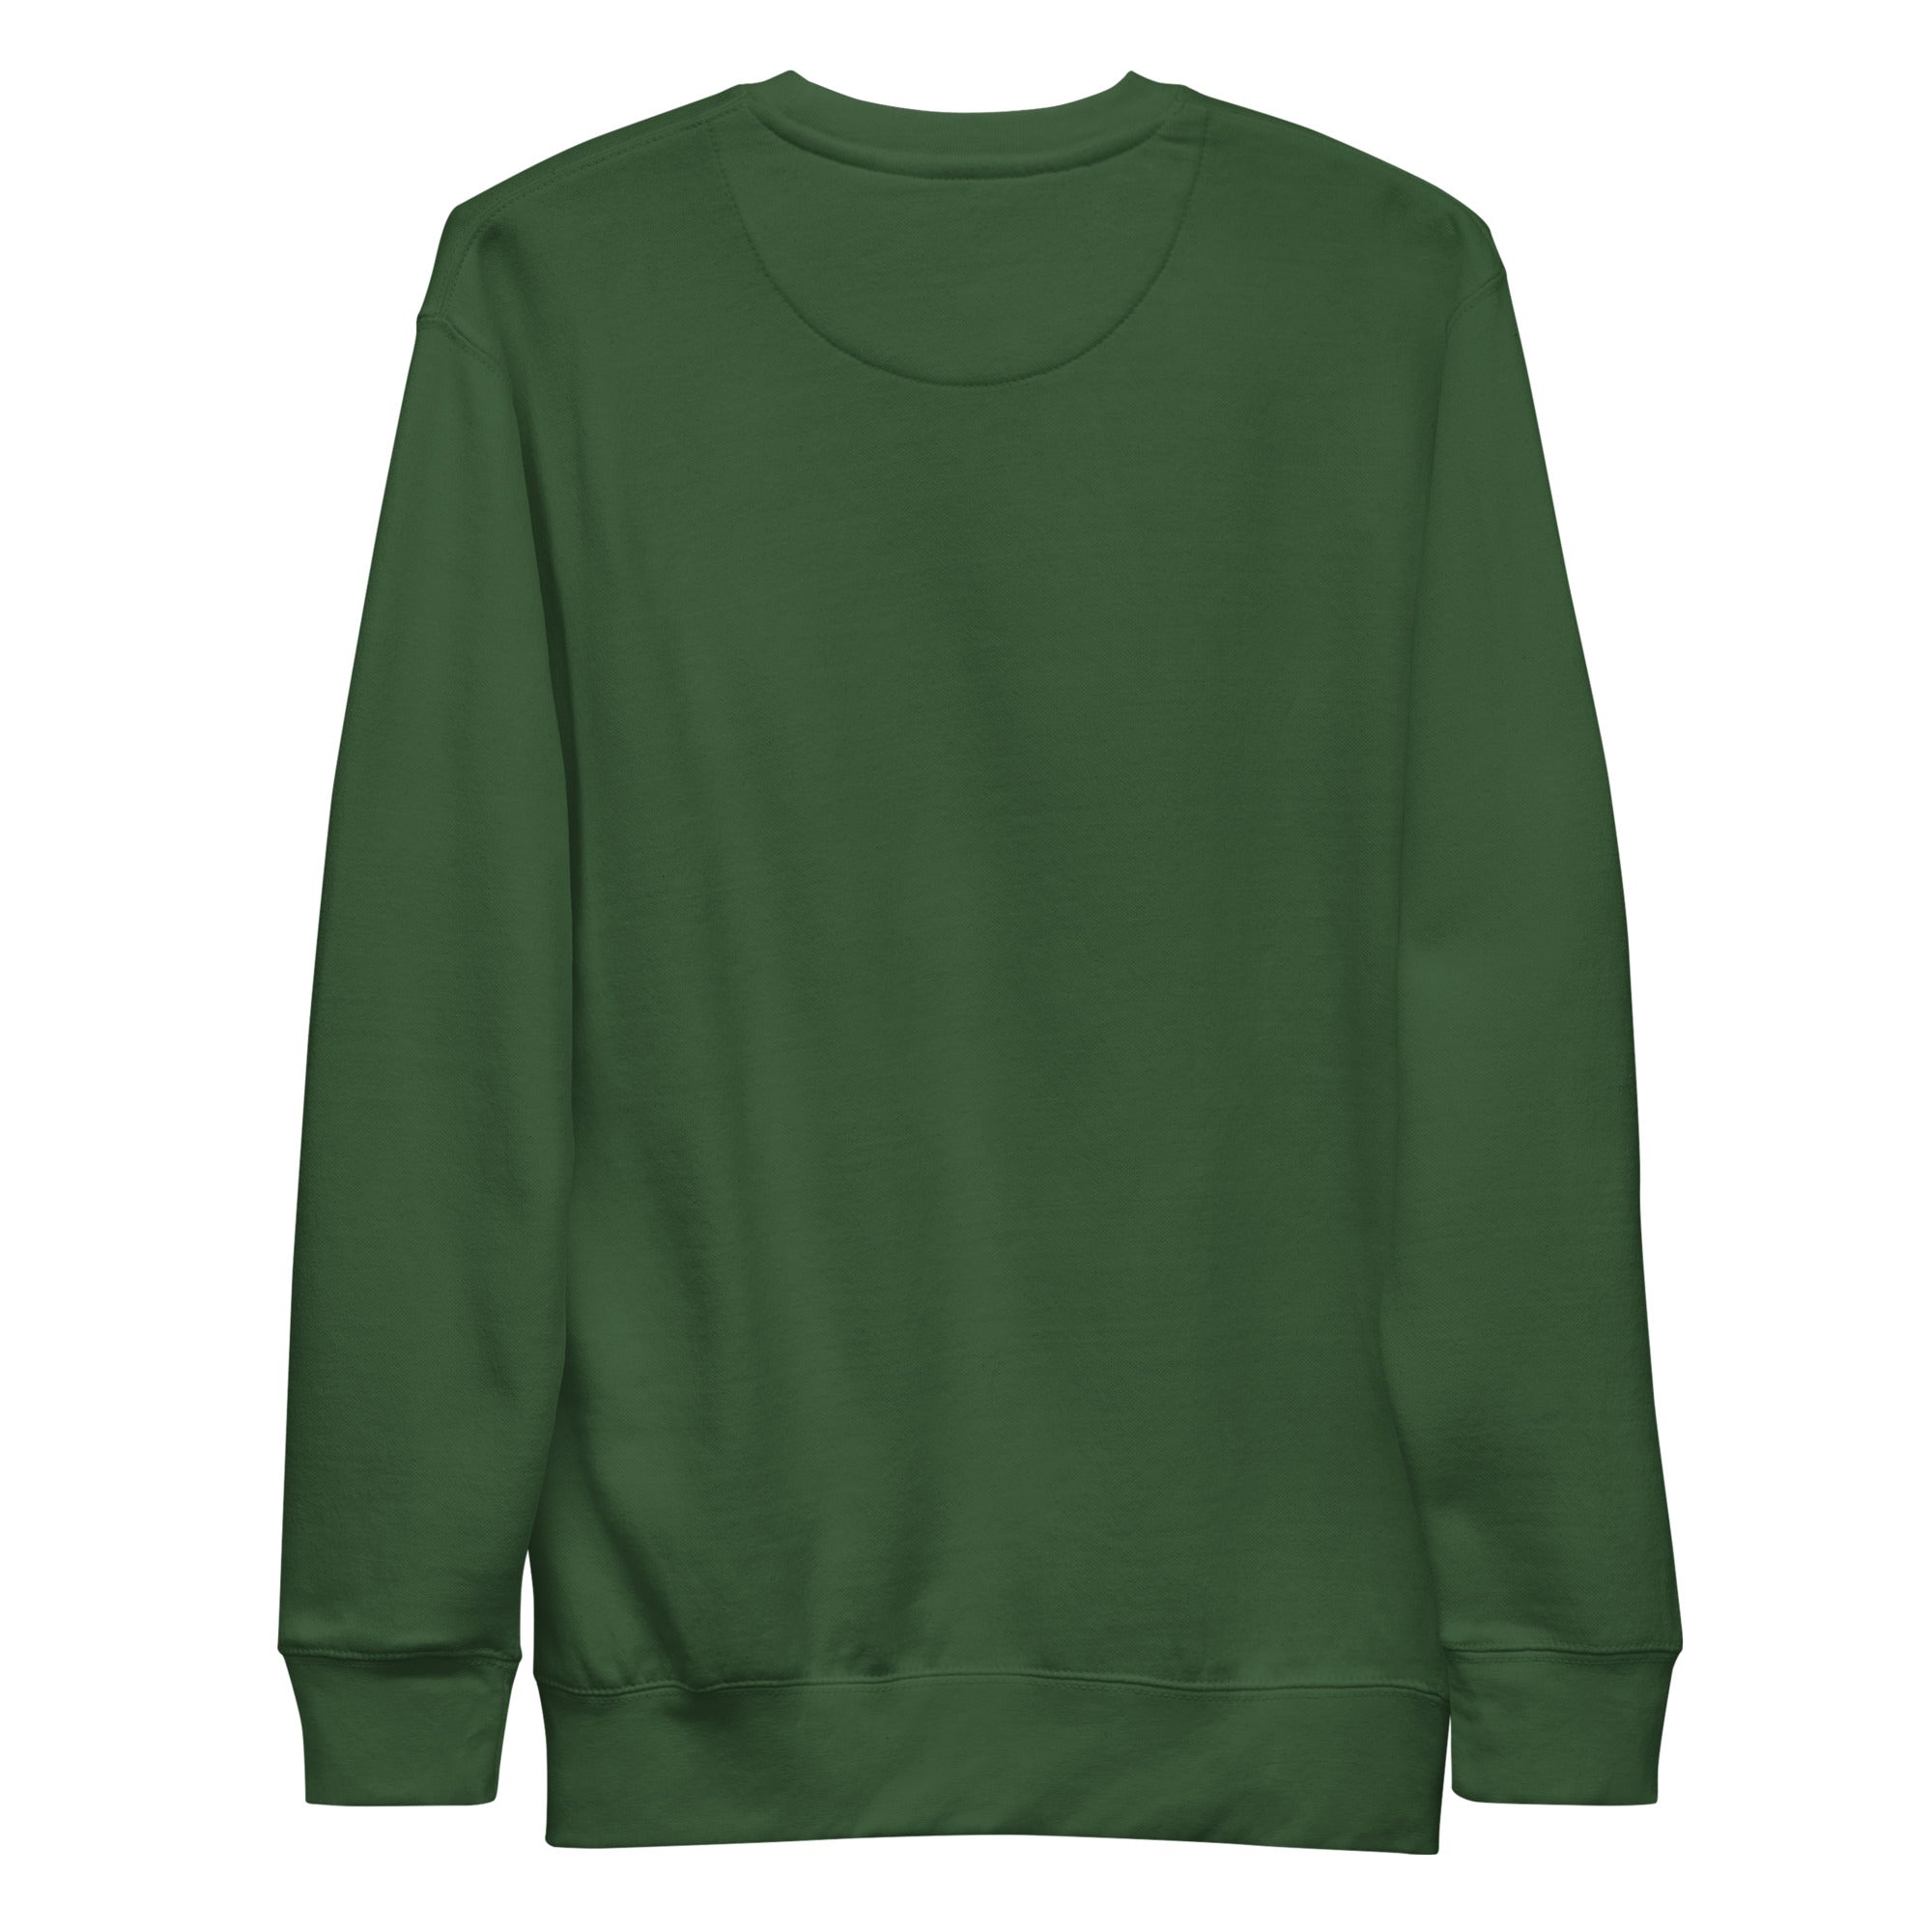 Grassland - Forest Green Crewneck Sweatshirt